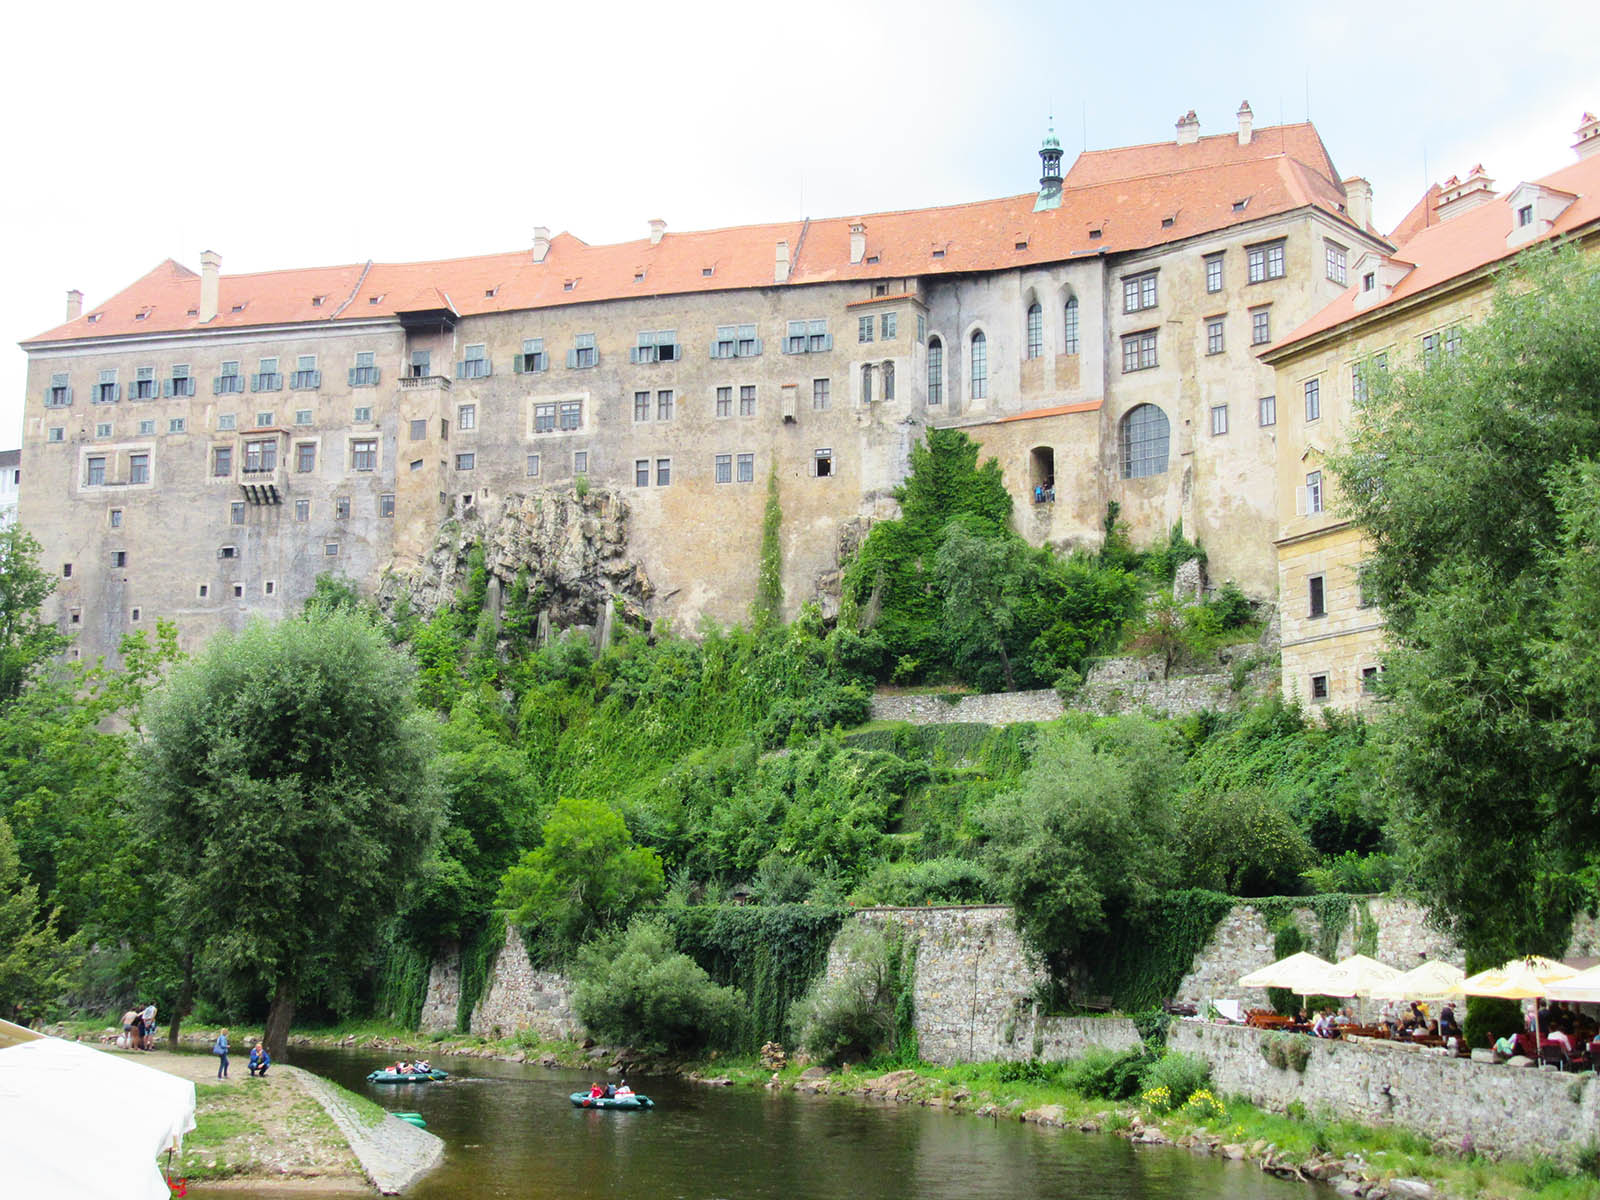 The castle dominating the city of Český Krumlov. Credit: Carolina Valenzuela